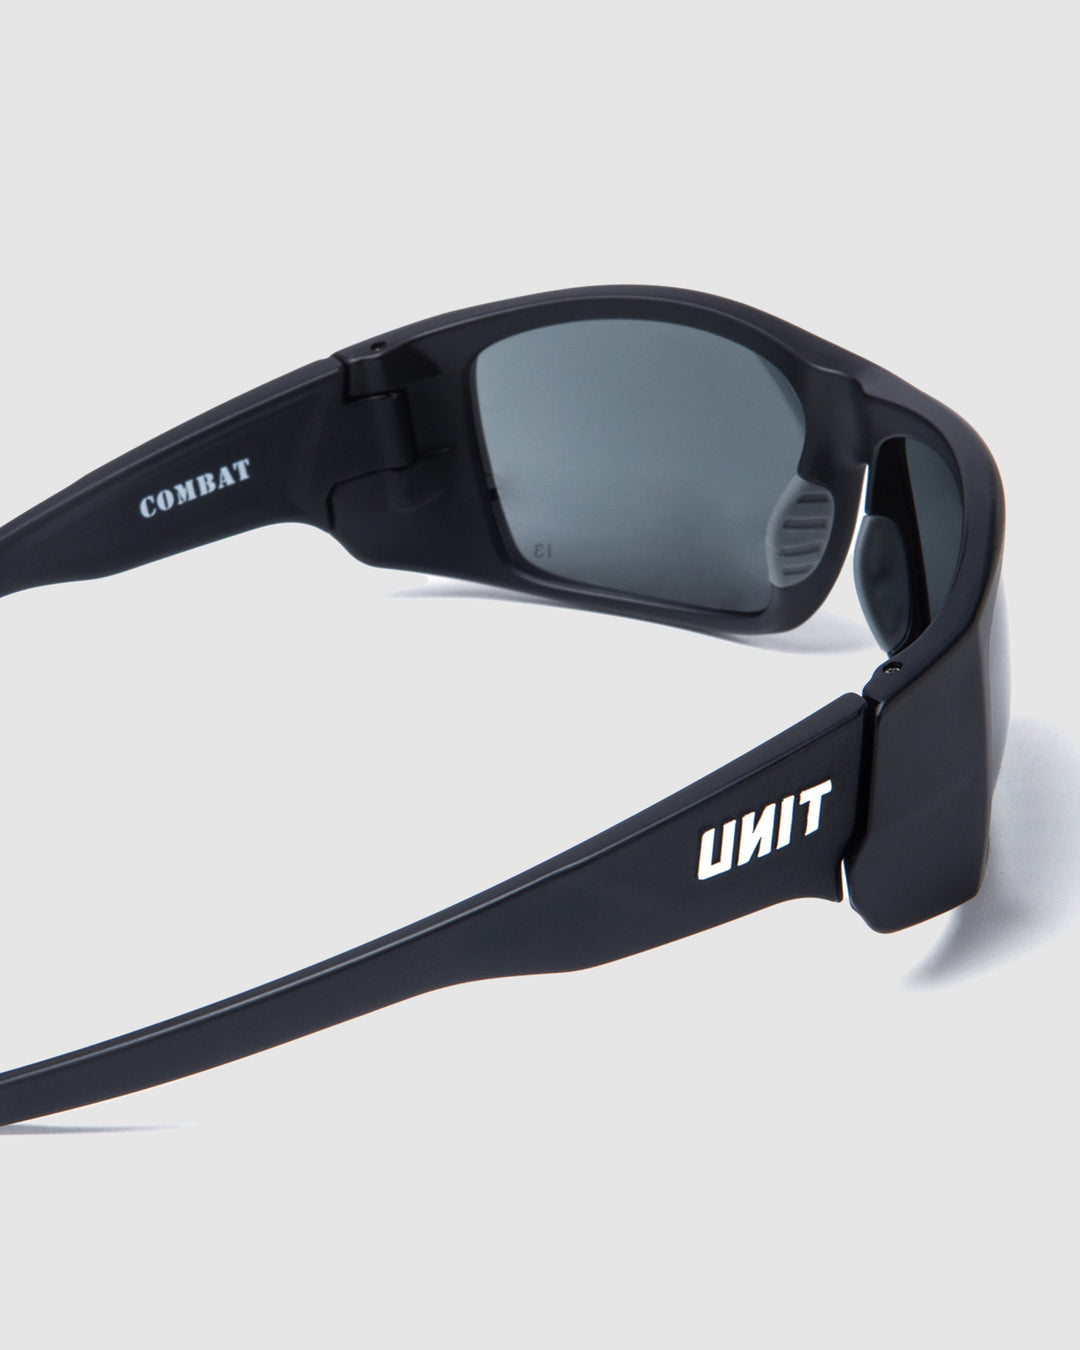 UNIT Combat - Medium Impact Safety Sunglasses - Black